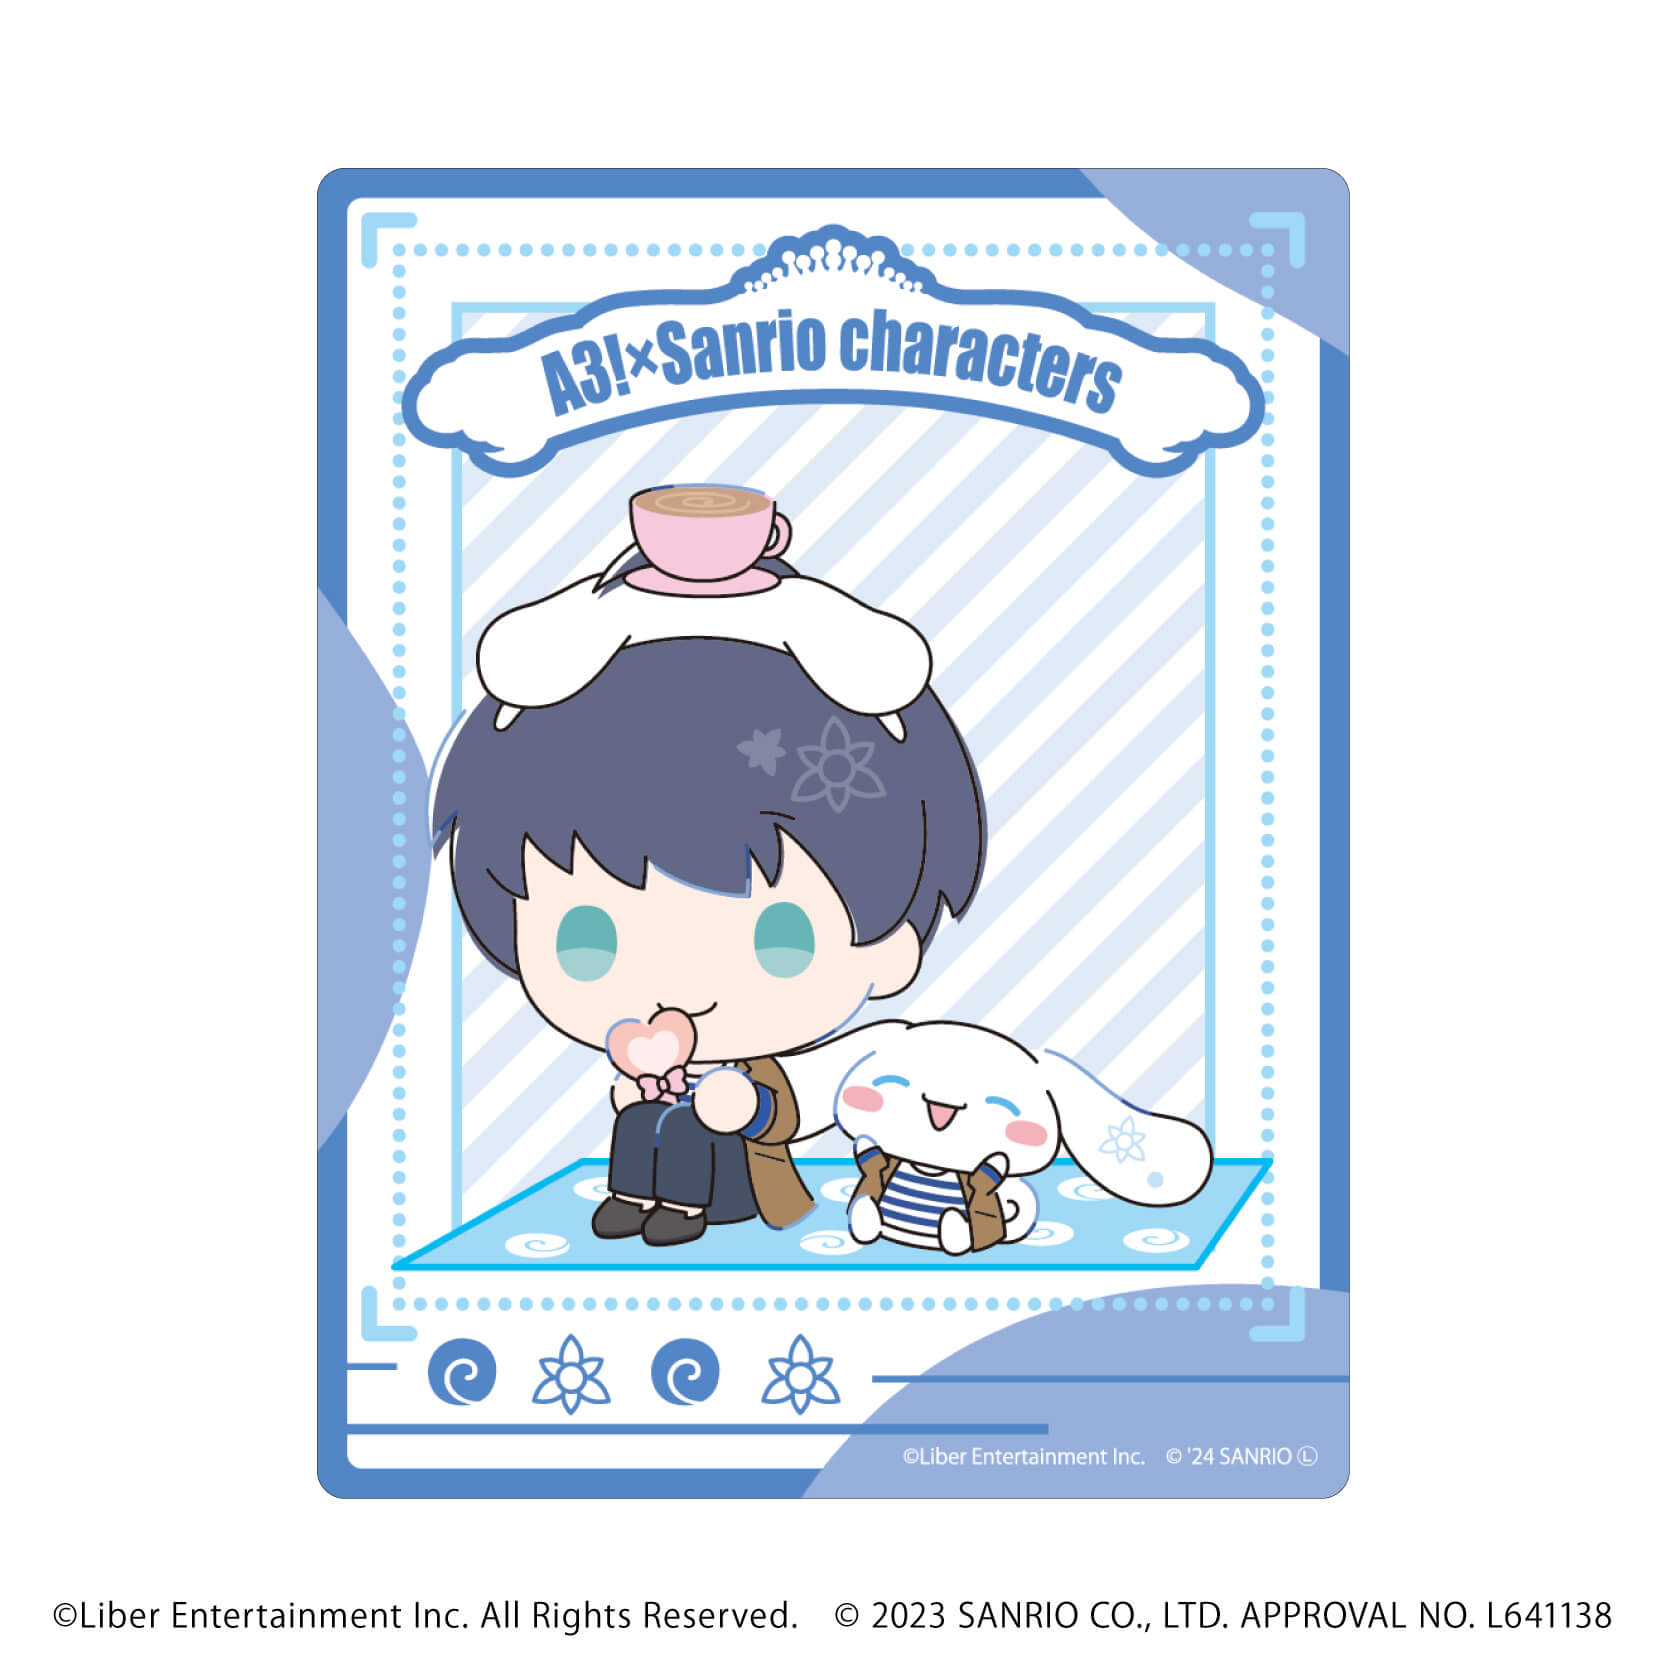 アクリルカード「A3!×Sanrio characters」10/A＆W コンプリートBOX(全12種)(ミニキャライラスト)